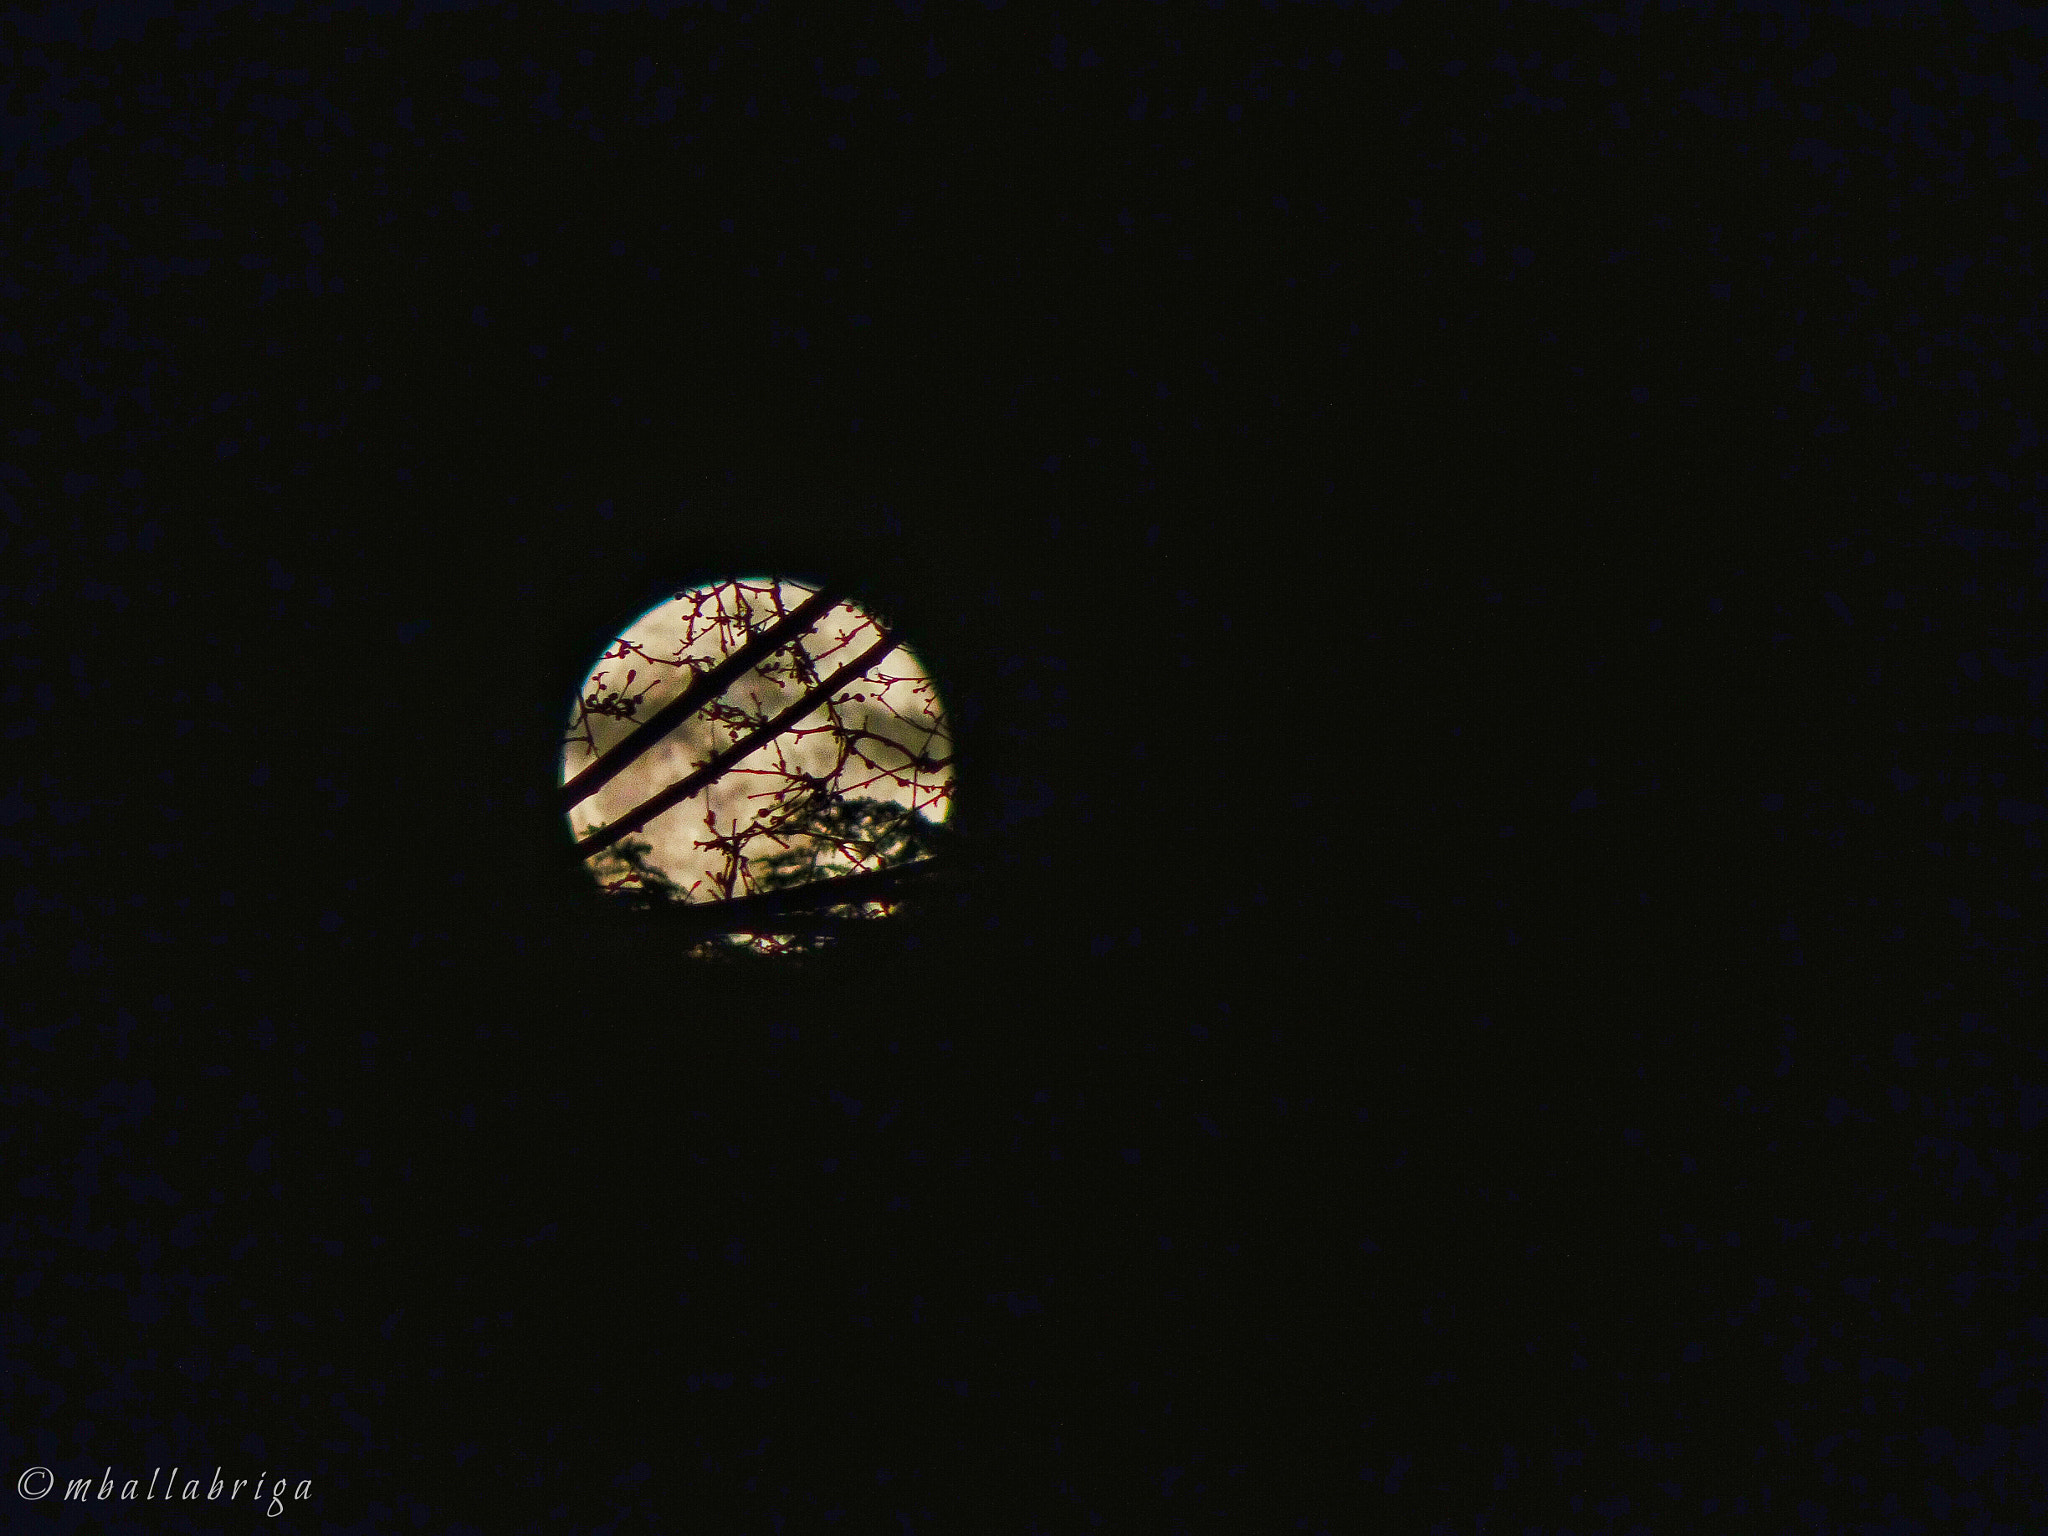 Sony DSC-HX90 sample photo. Full moon photography